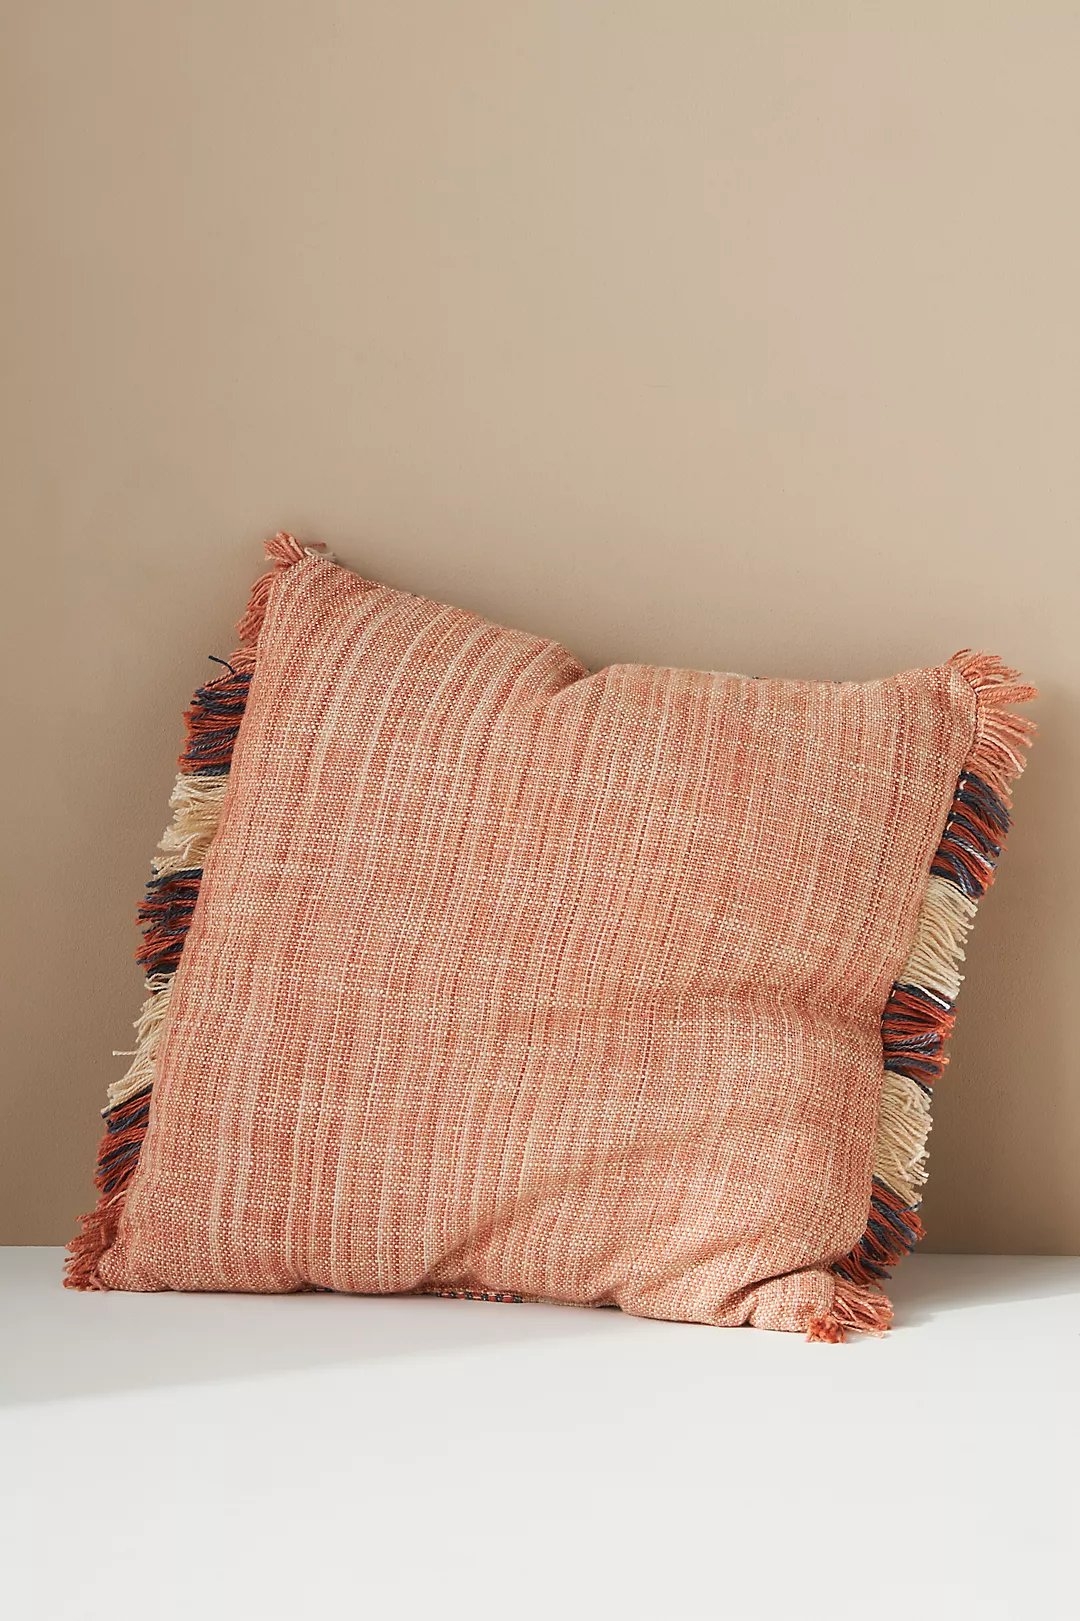 Somerset Indoor/Outdoor Pillow, Multi, 20" x 20" - Image 3